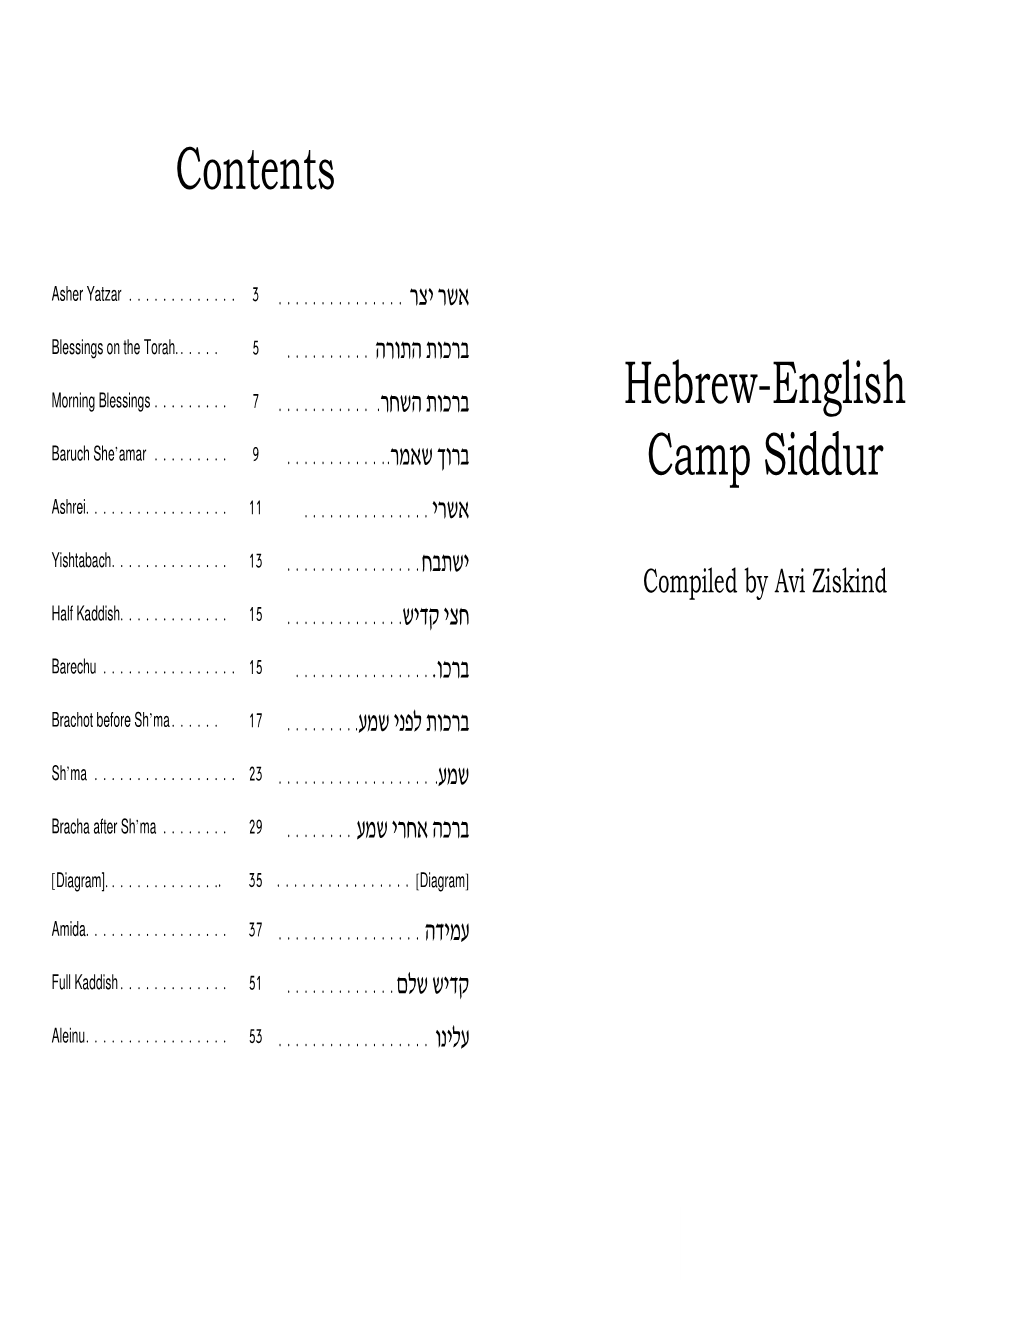 Hebrew-English Cam P Siddur Contents